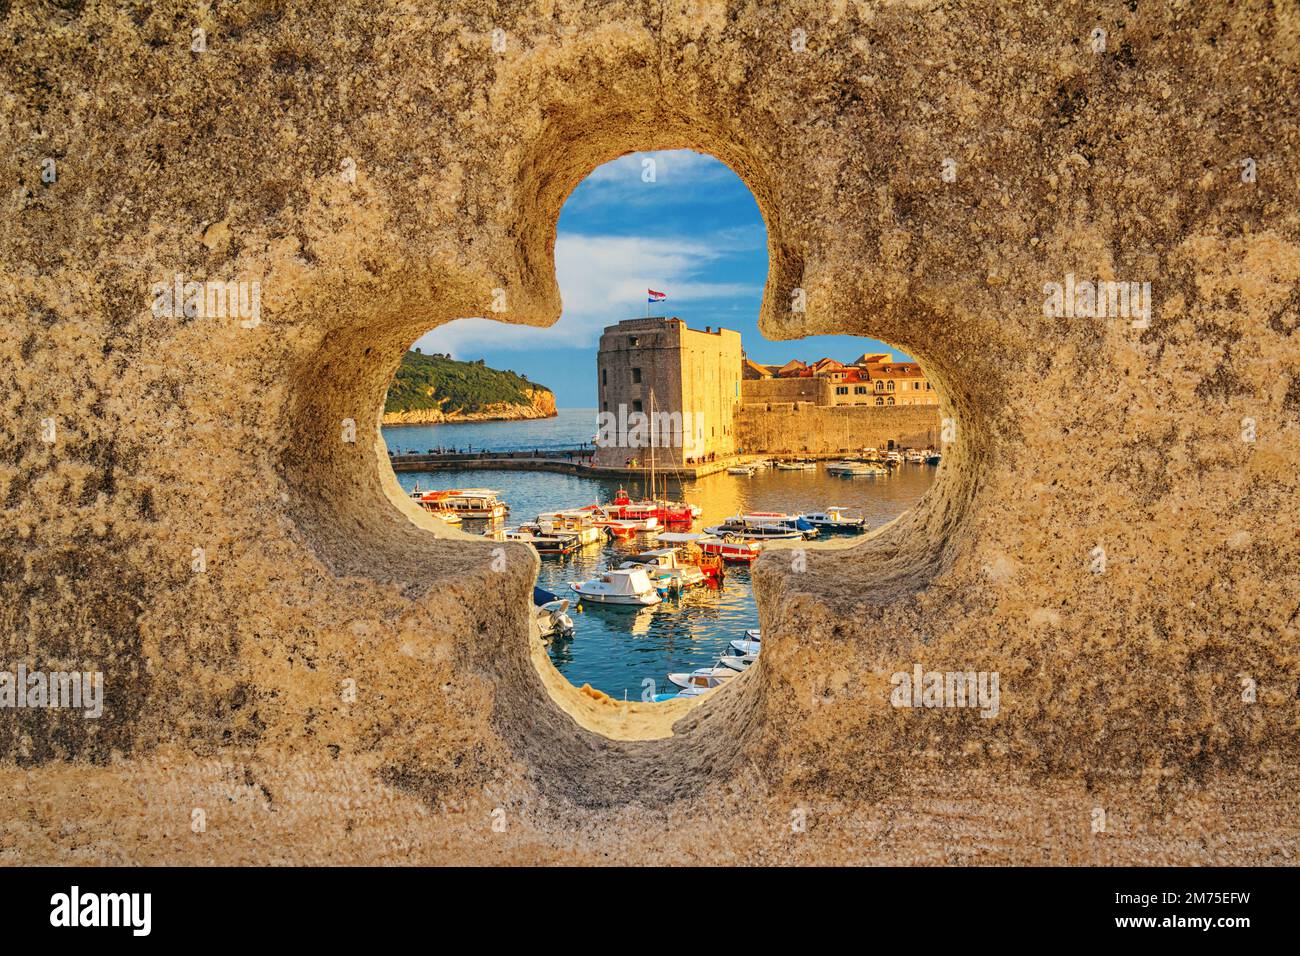 Paesaggio estivo costiero - vista del porto della città e del porto turistico della città vecchia di Dubrovnik sulla costa adriatica della Croazia Foto Stock